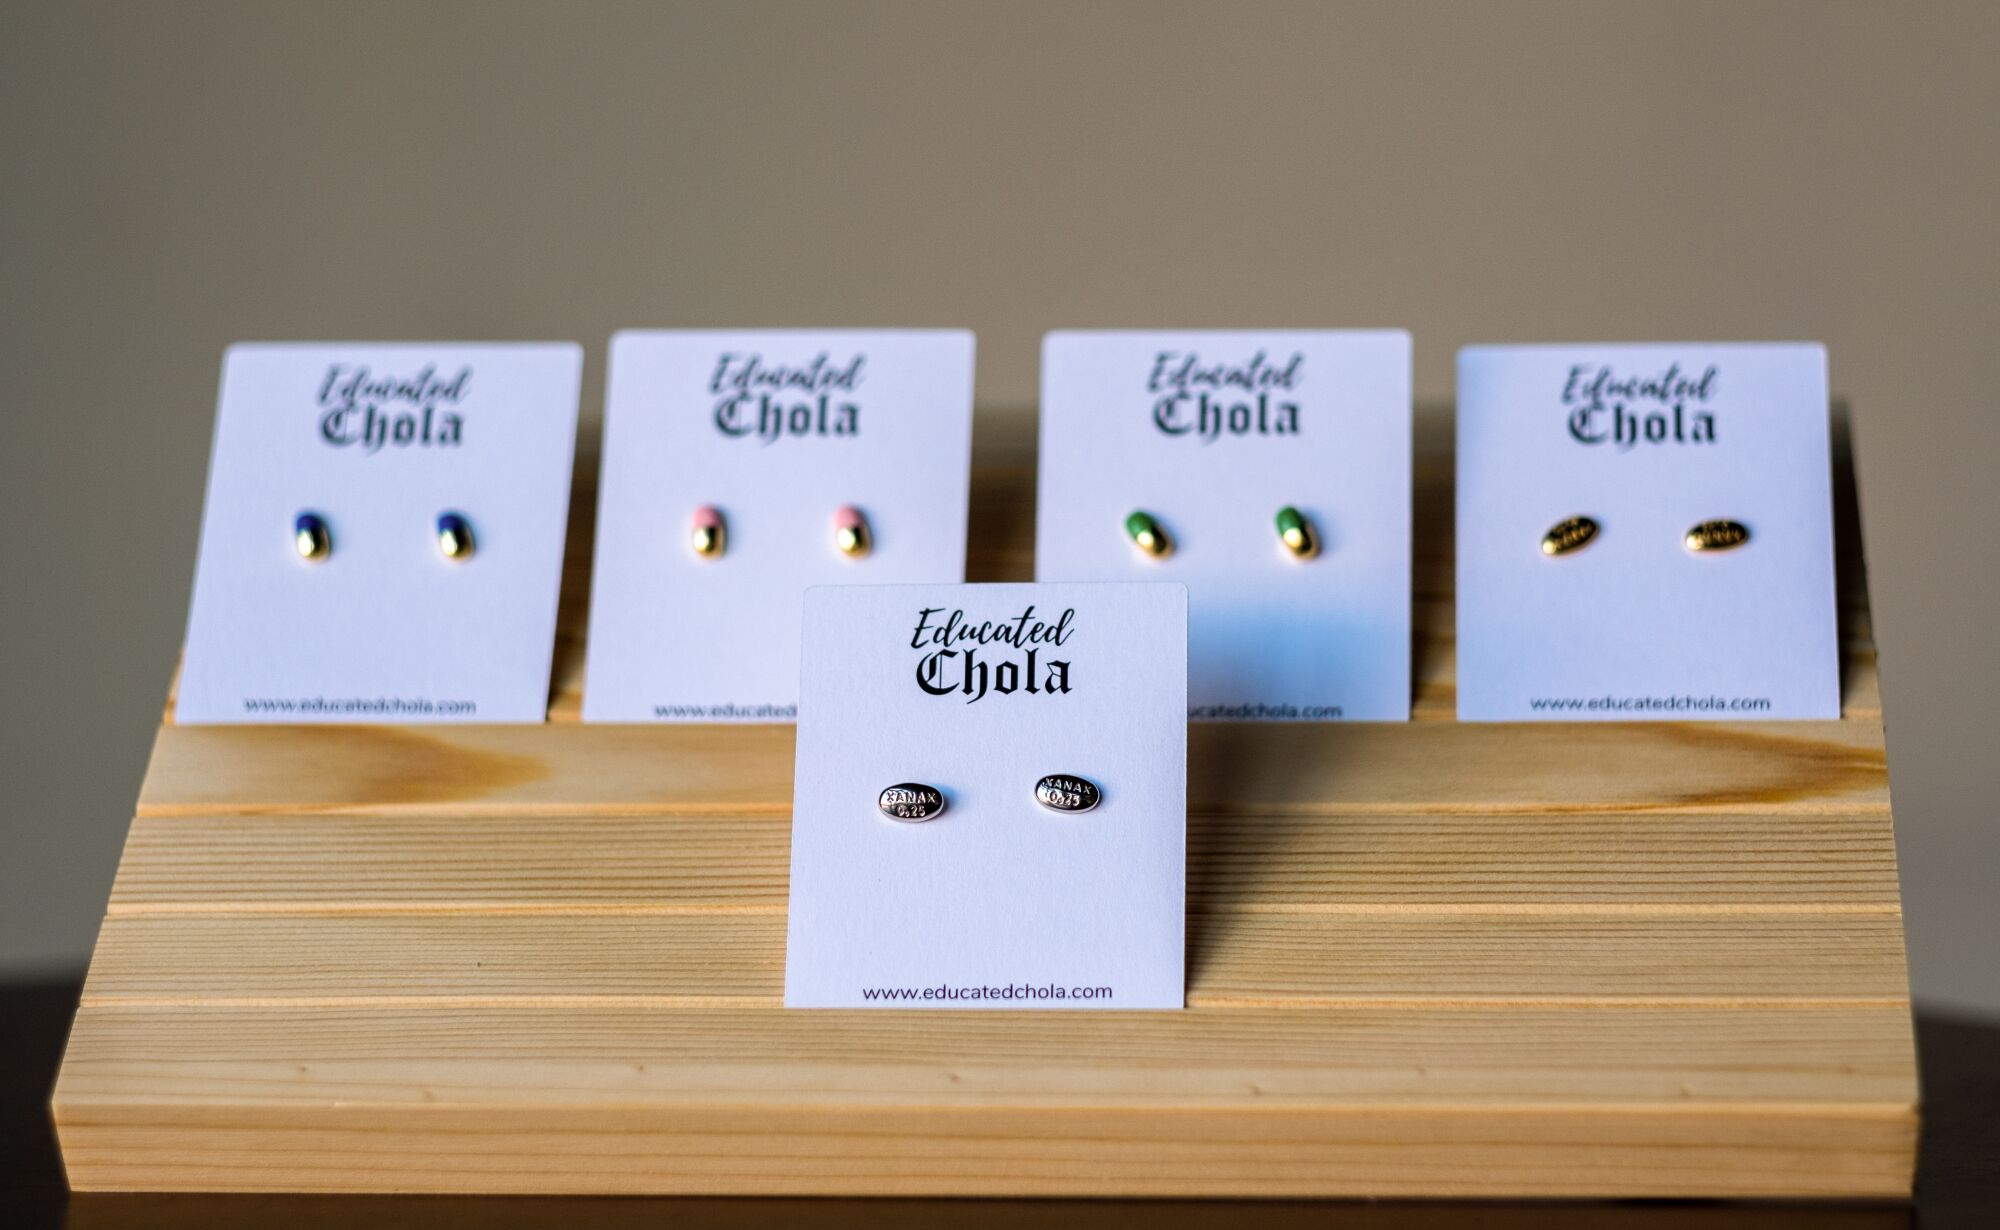 Educated Chola earrings on display.